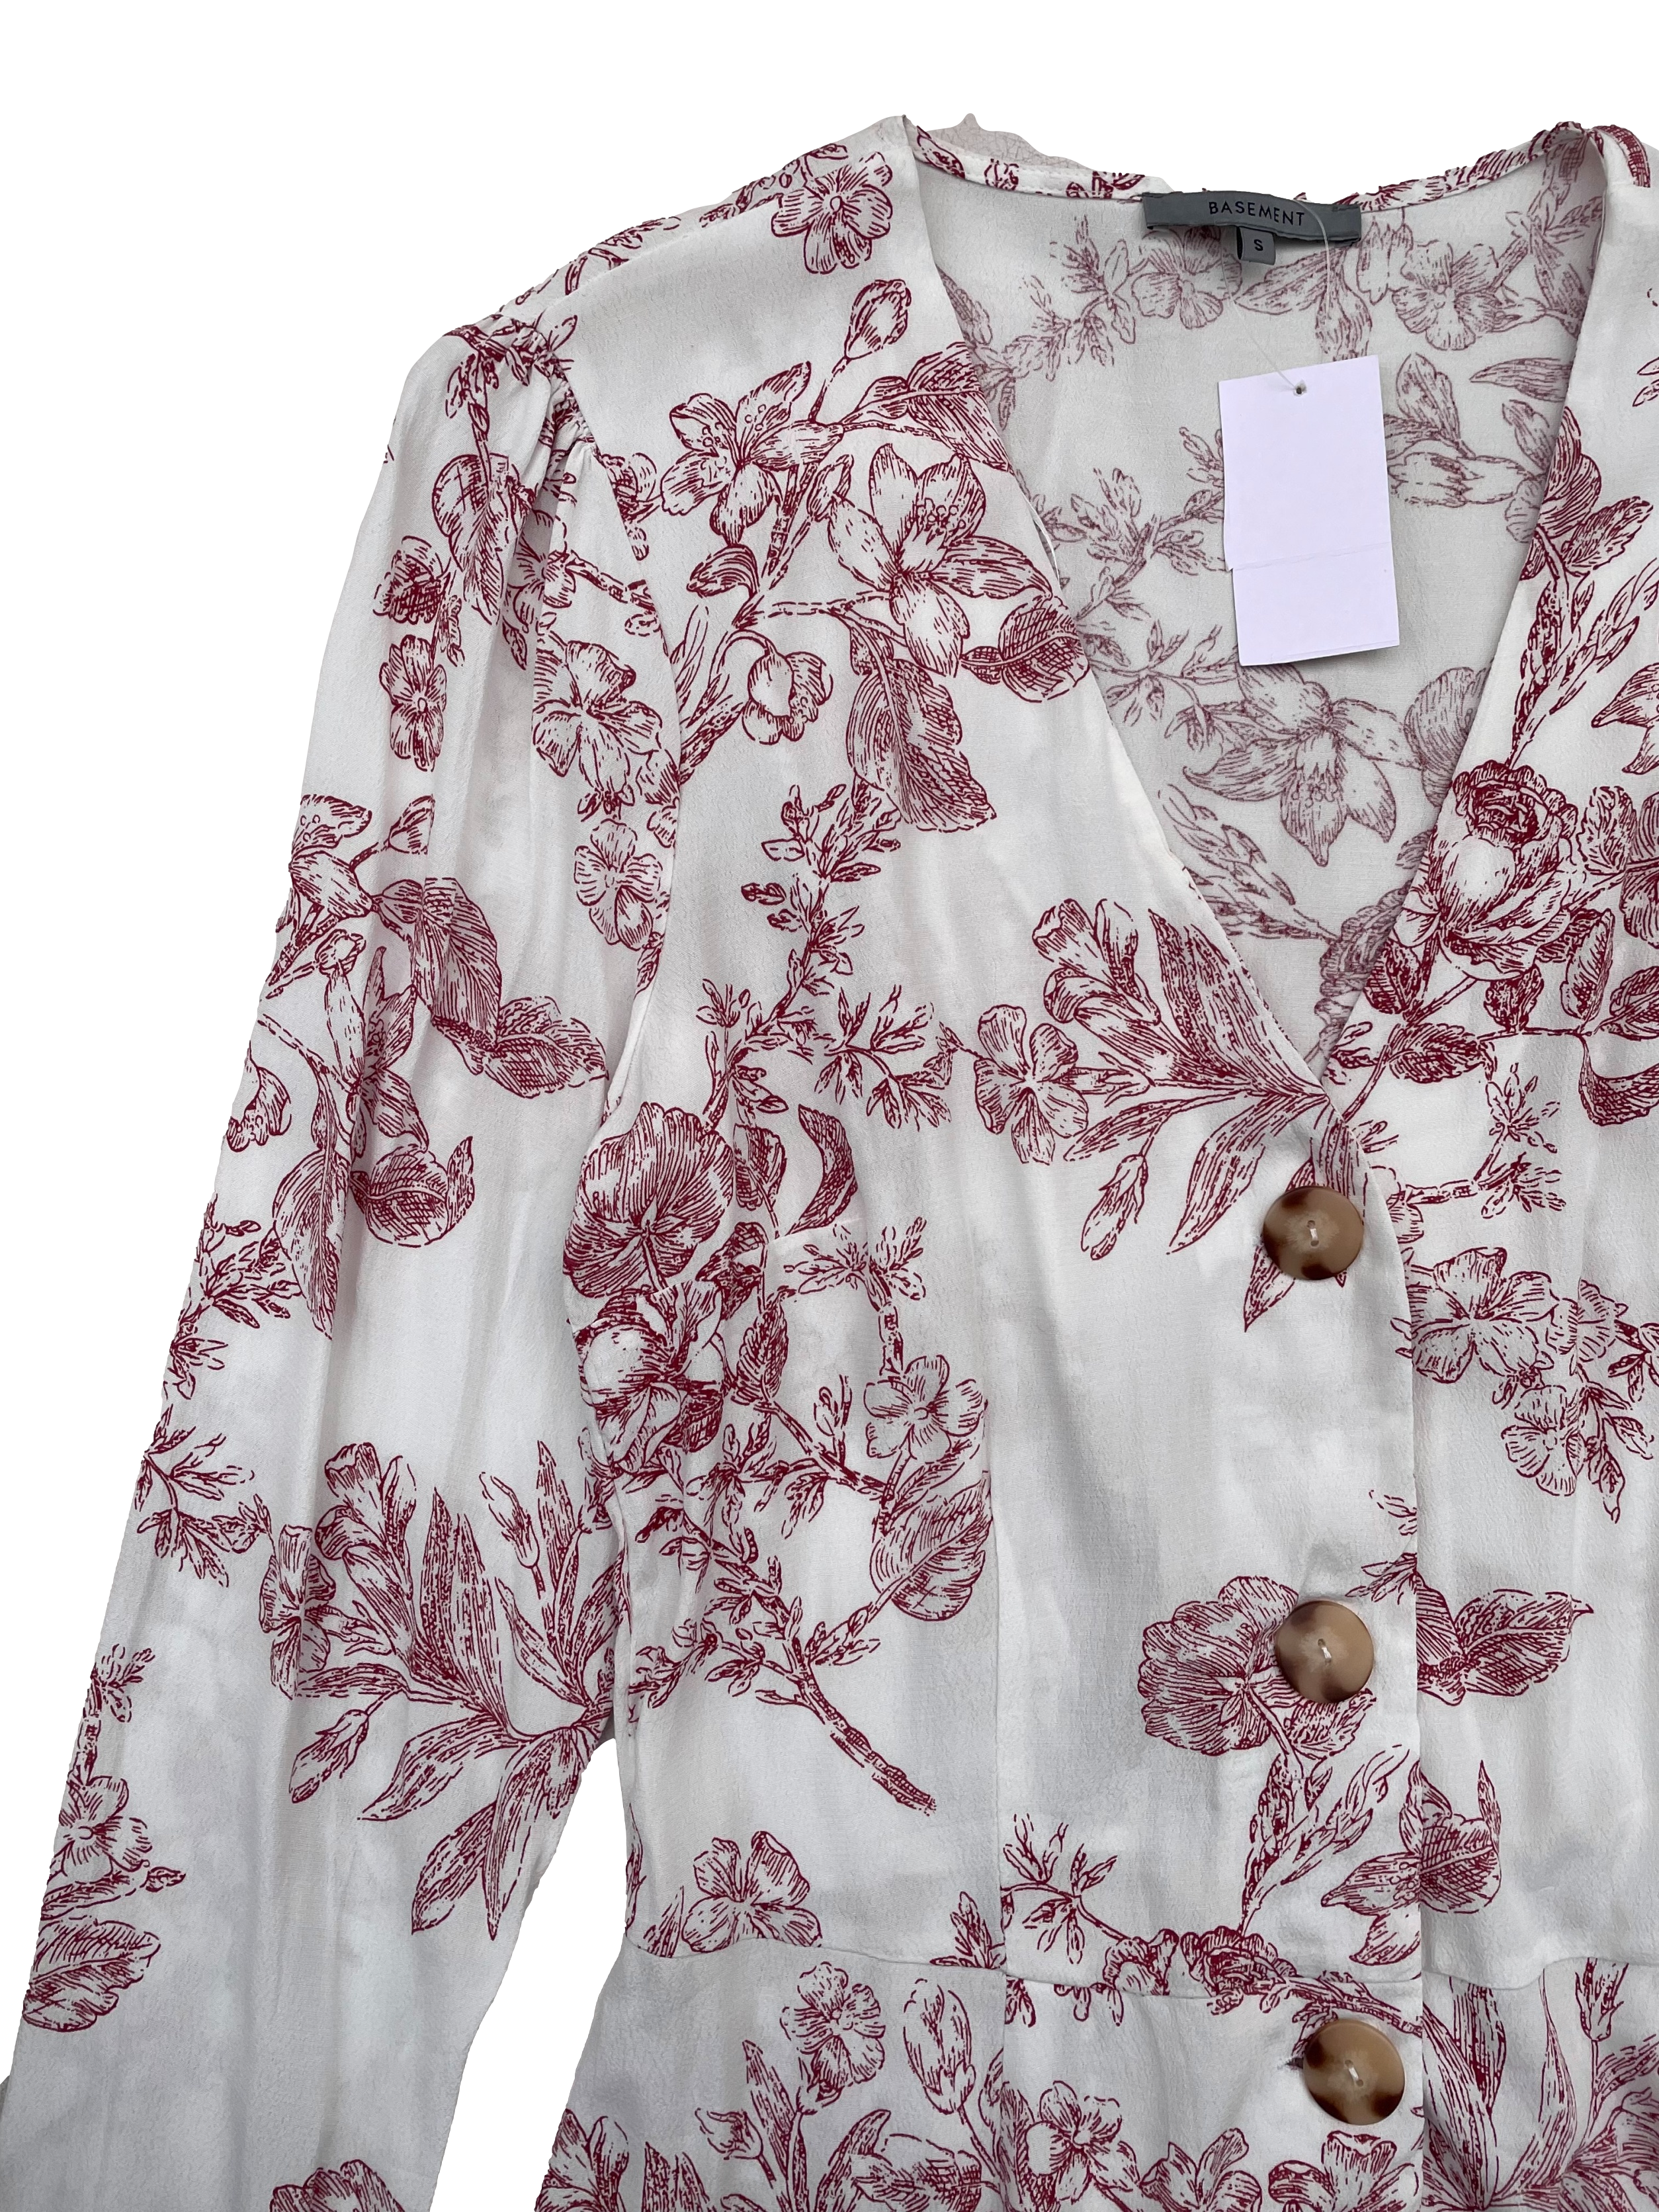 Blusa Basement de crepé blanco con estampado floral rojo, cuello en V, botones cacho, corte en cintura con elástico en espalda. Busto 96cm, Largo 58cm.